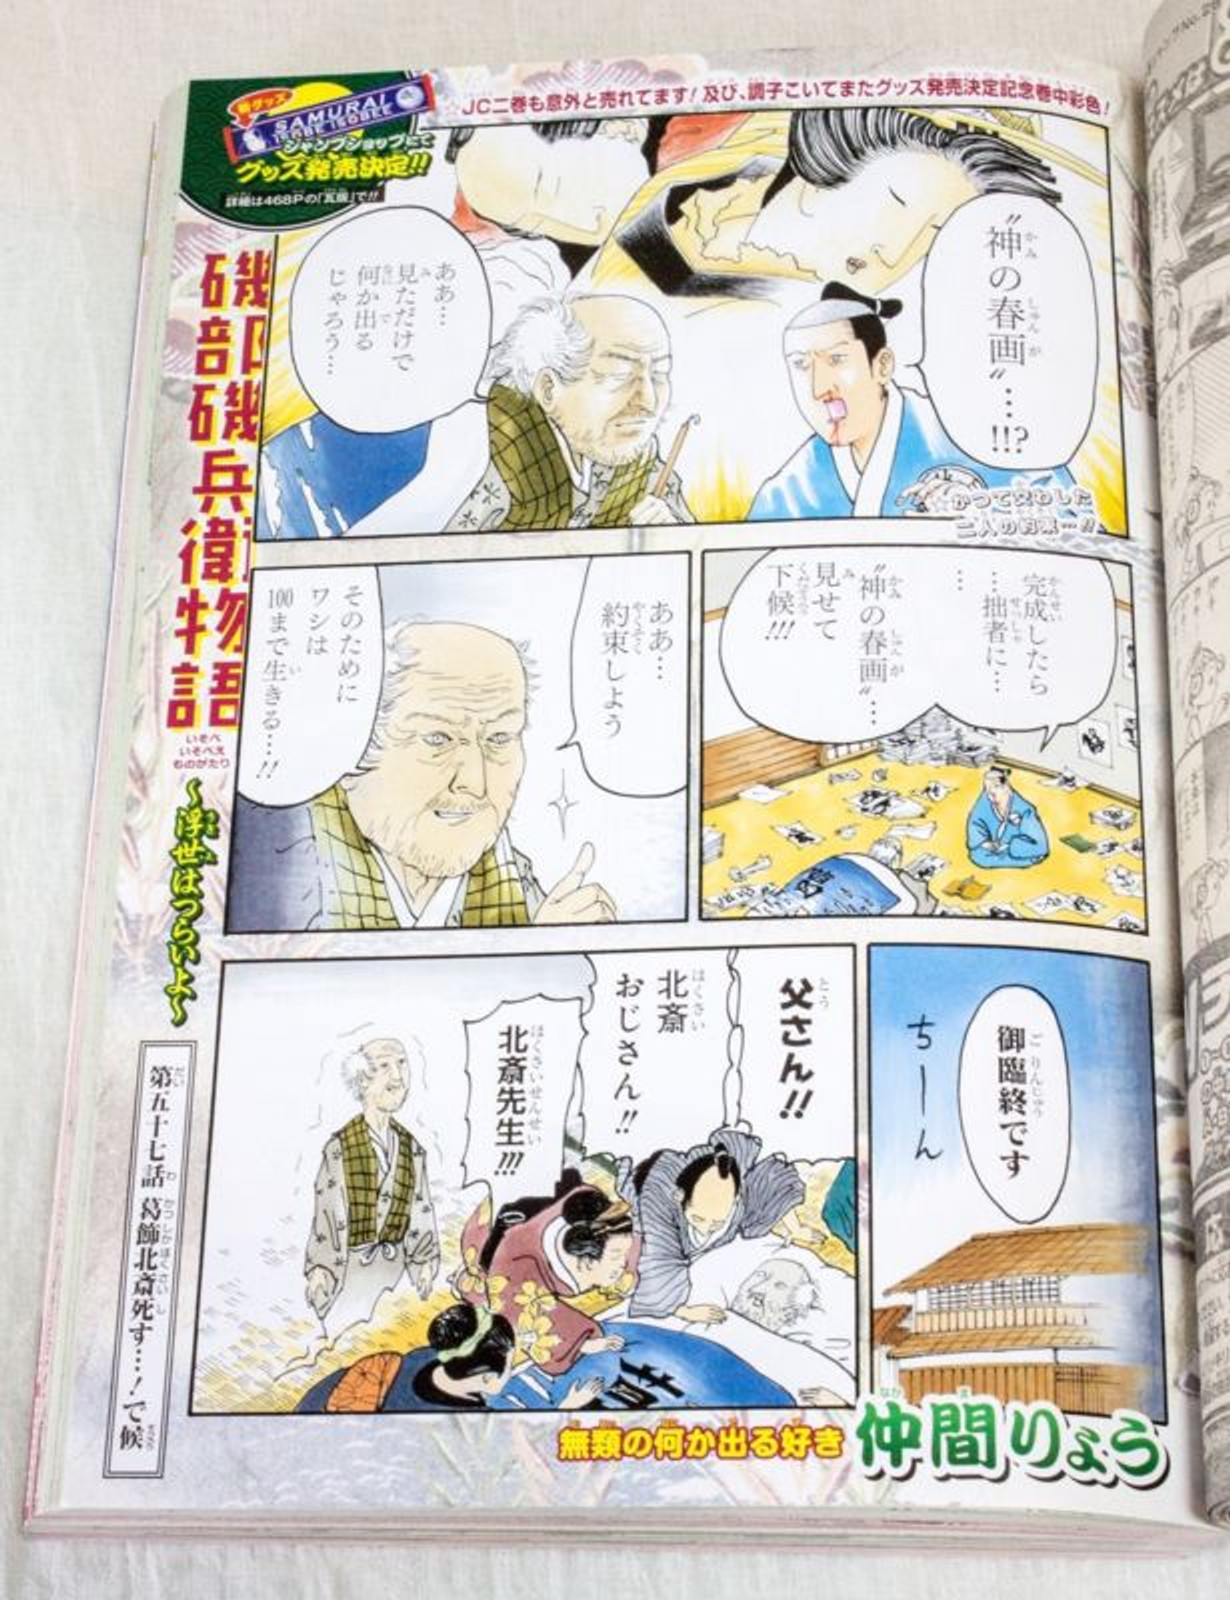 Weekly Shonen JUMP  Vol.26 2014 Hinomaru Zumo / Japanese Magazine JAPAN MANGA